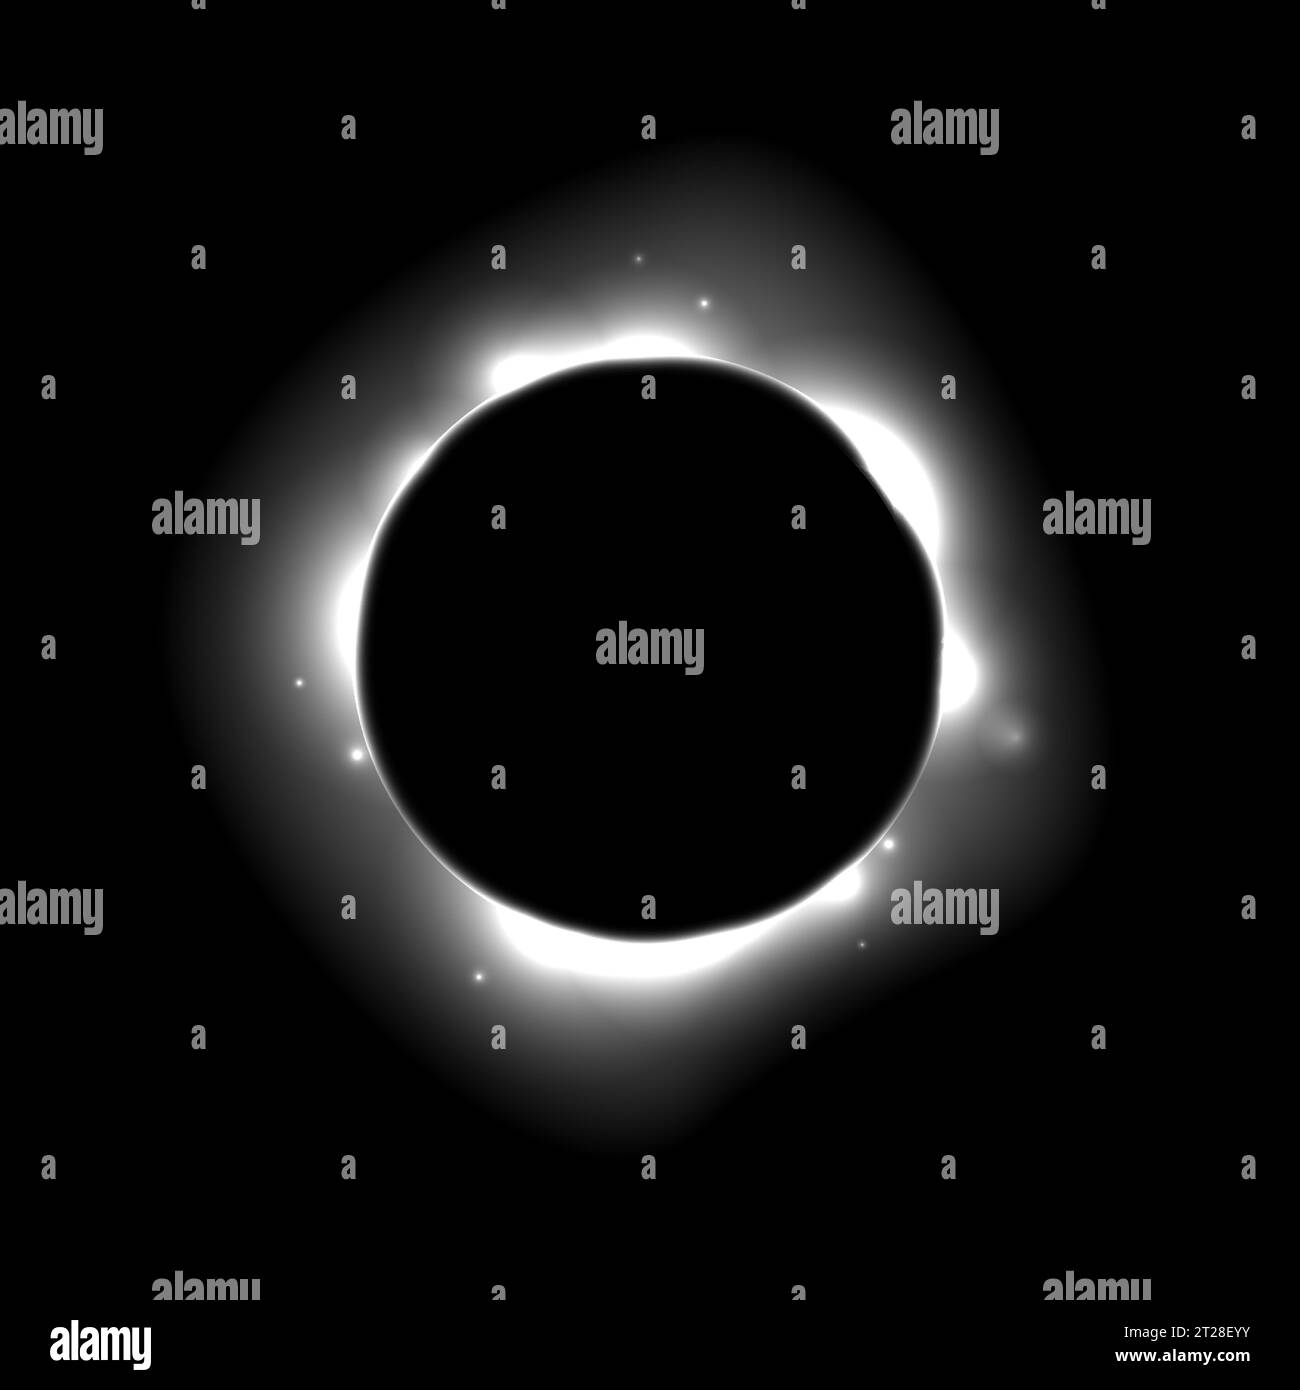 Concept Sun Full eclipse. Fond gris clair de lueur de lune. éclipse totale solaire ou planétaire dans l'espace sombre. Éruption de surface d'étoile chaude avec des effets de rayons et de faisceaux. Illustration vectorielle de supernova Illustration de Vecteur